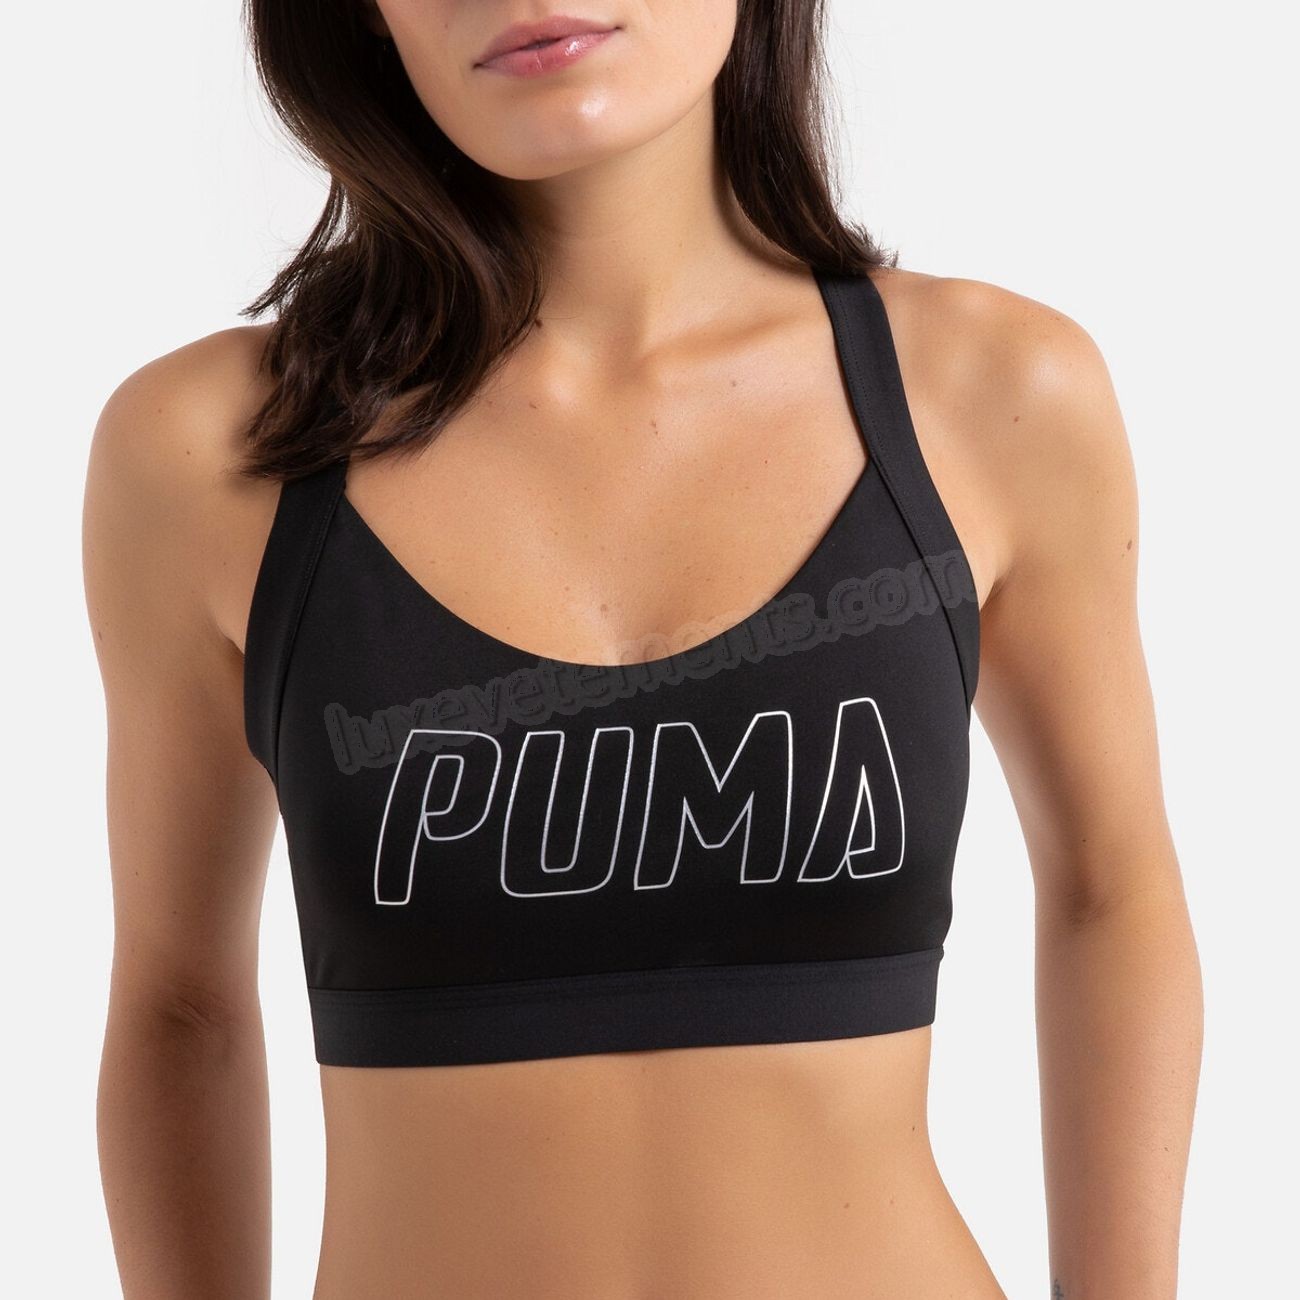 Puma-Fitness femme PUMA Brassière femme Puma train Vente en ligne - Puma-Fitness femme PUMA Brassière femme Puma train Vente en ligne